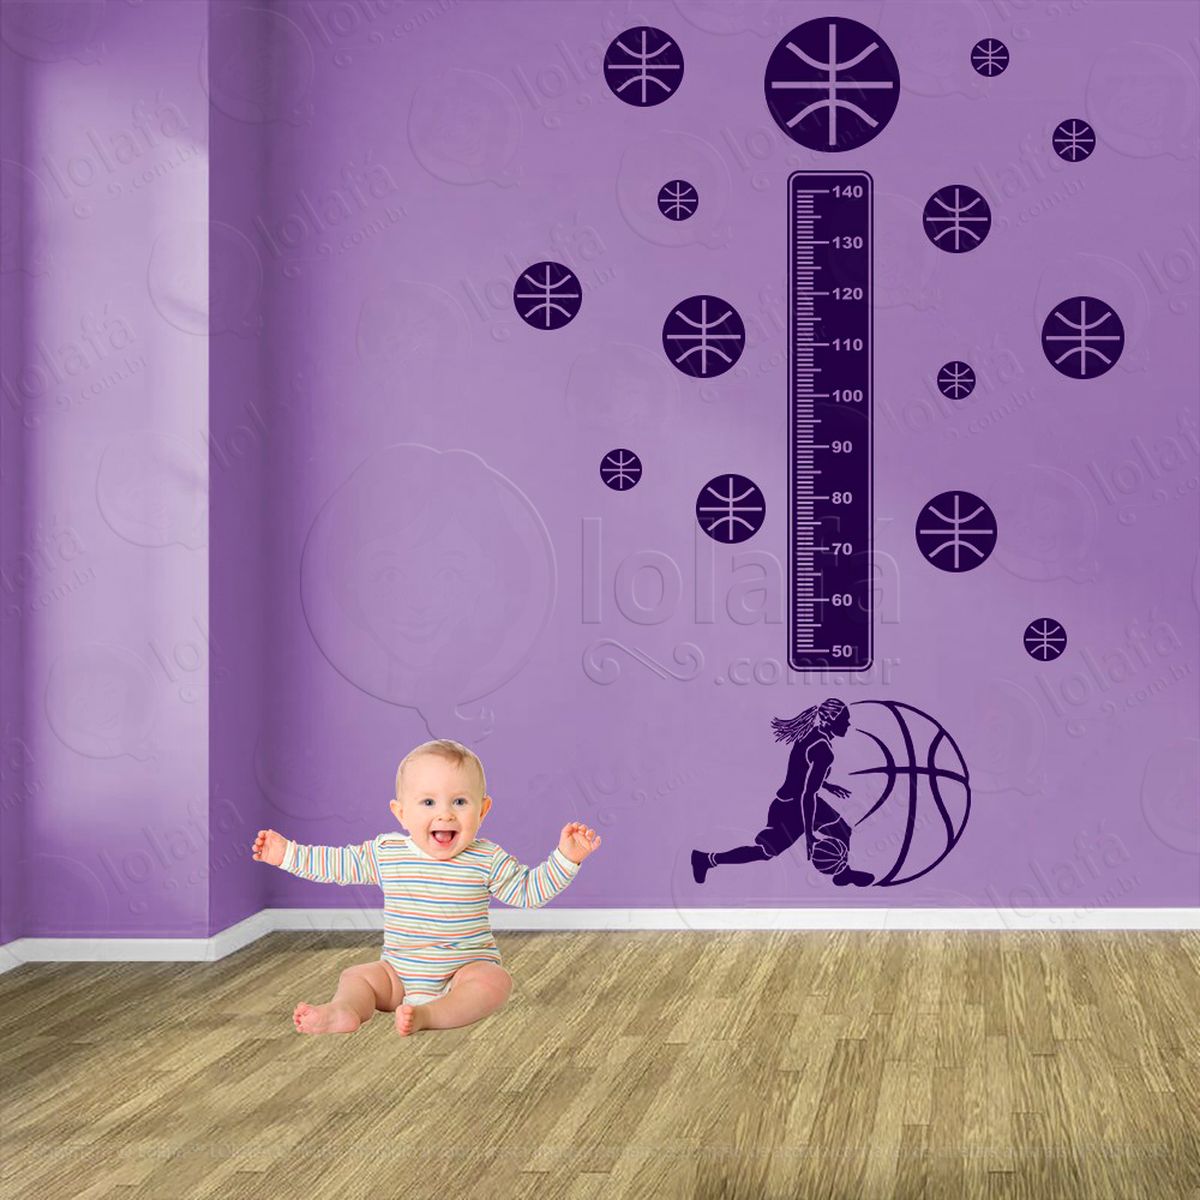 basquetebol e bolas de basquete adesivo régua de crescimento infantil, medidor de altura para quarto, porta e parede - mod:243